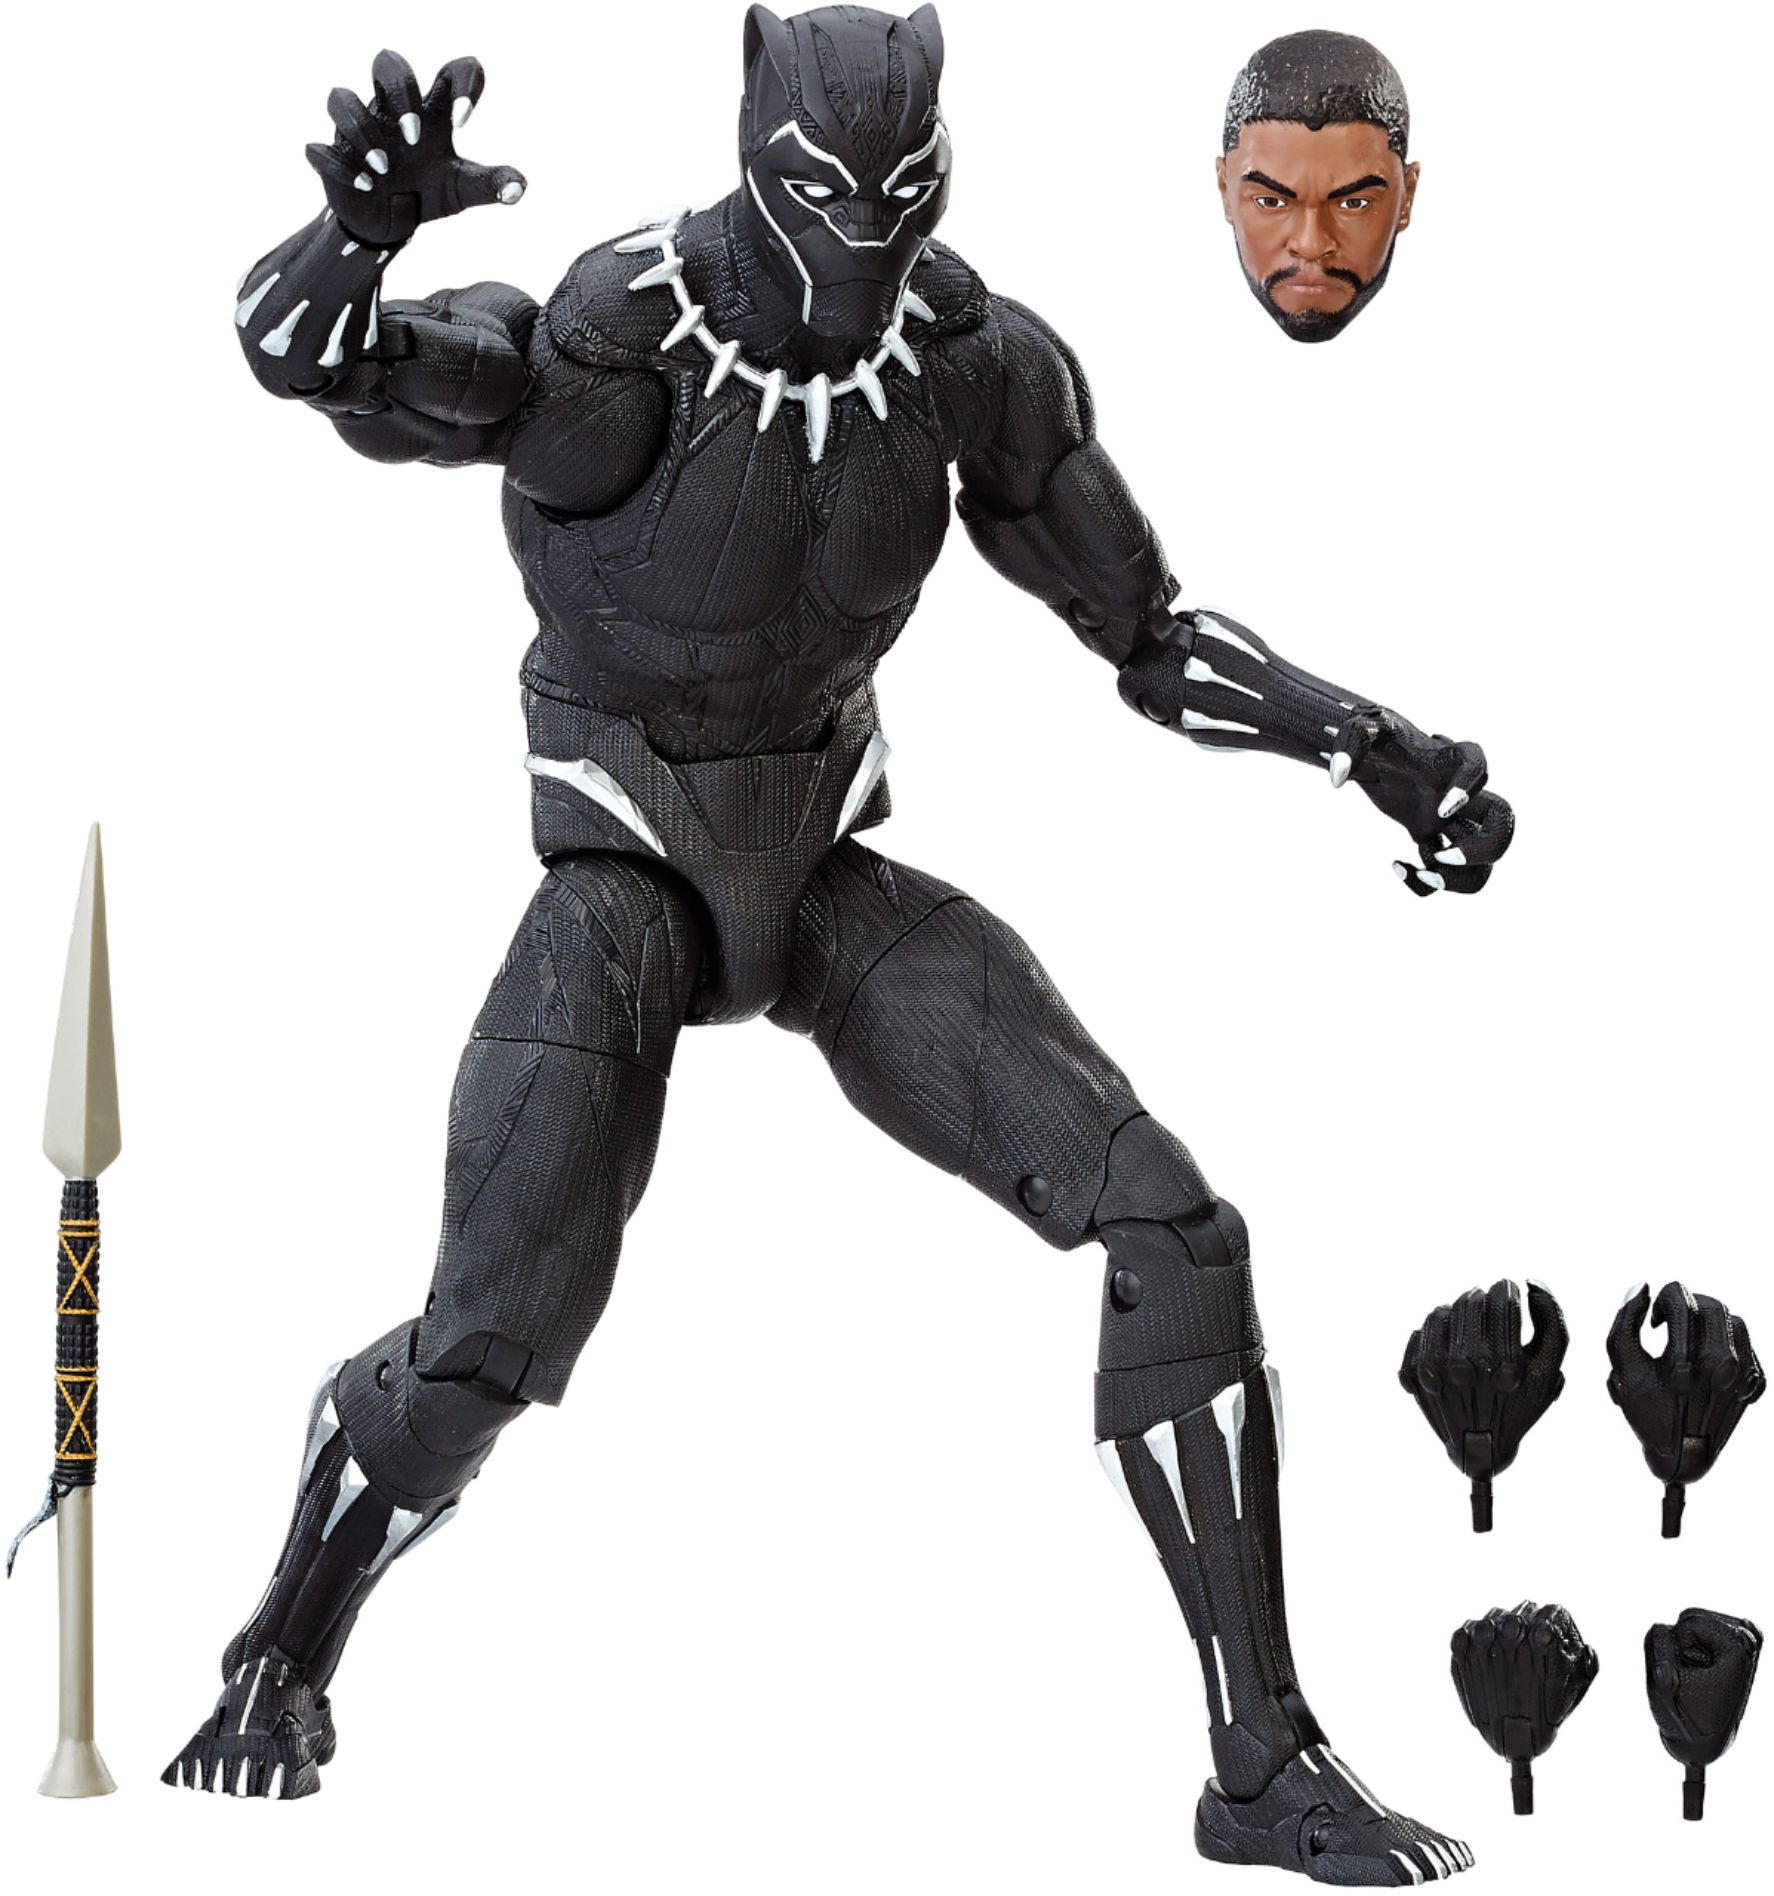 marvel legend series black panther